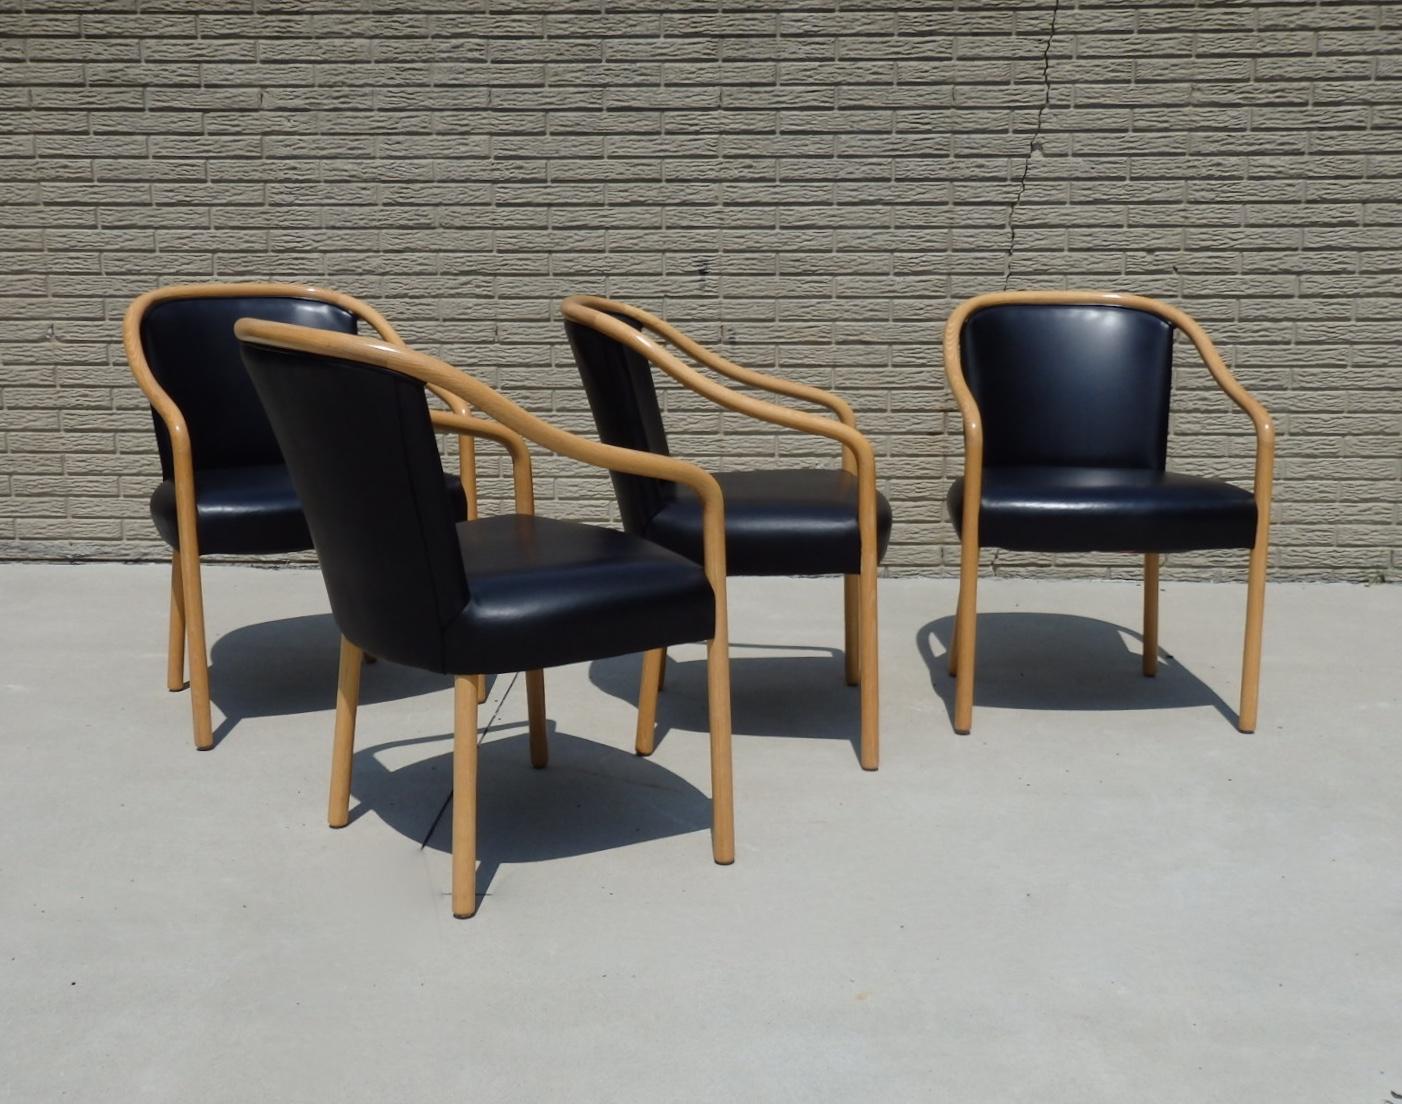 Ensemble de quatre chaises en frêne recouvertes de cuir noir. Conçu par Ward Bennet pour Brickel Associates. L'état est superbe.